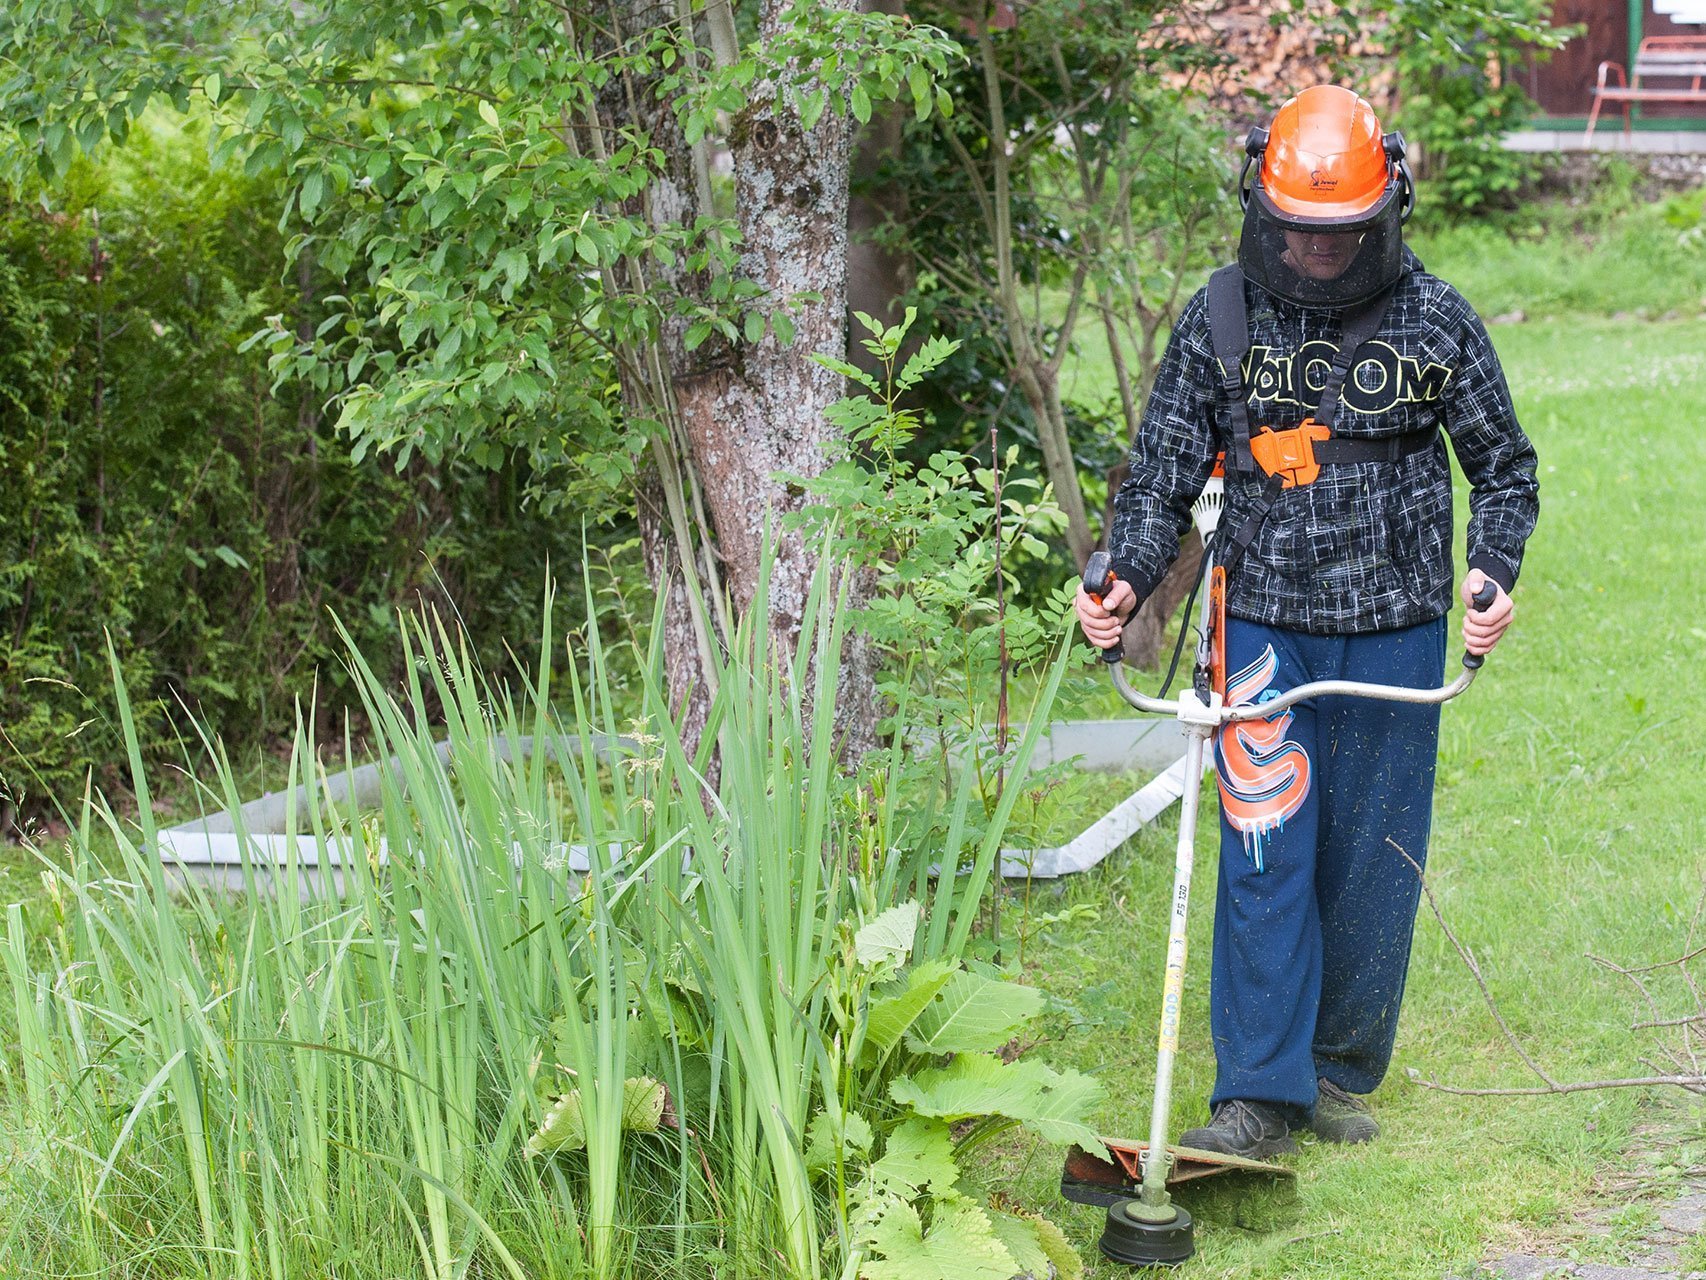 Gartenarbeit: ein Mann mit Arbeitssicherheits-Ausrüstung und orangem Helm trimmt den Rasen